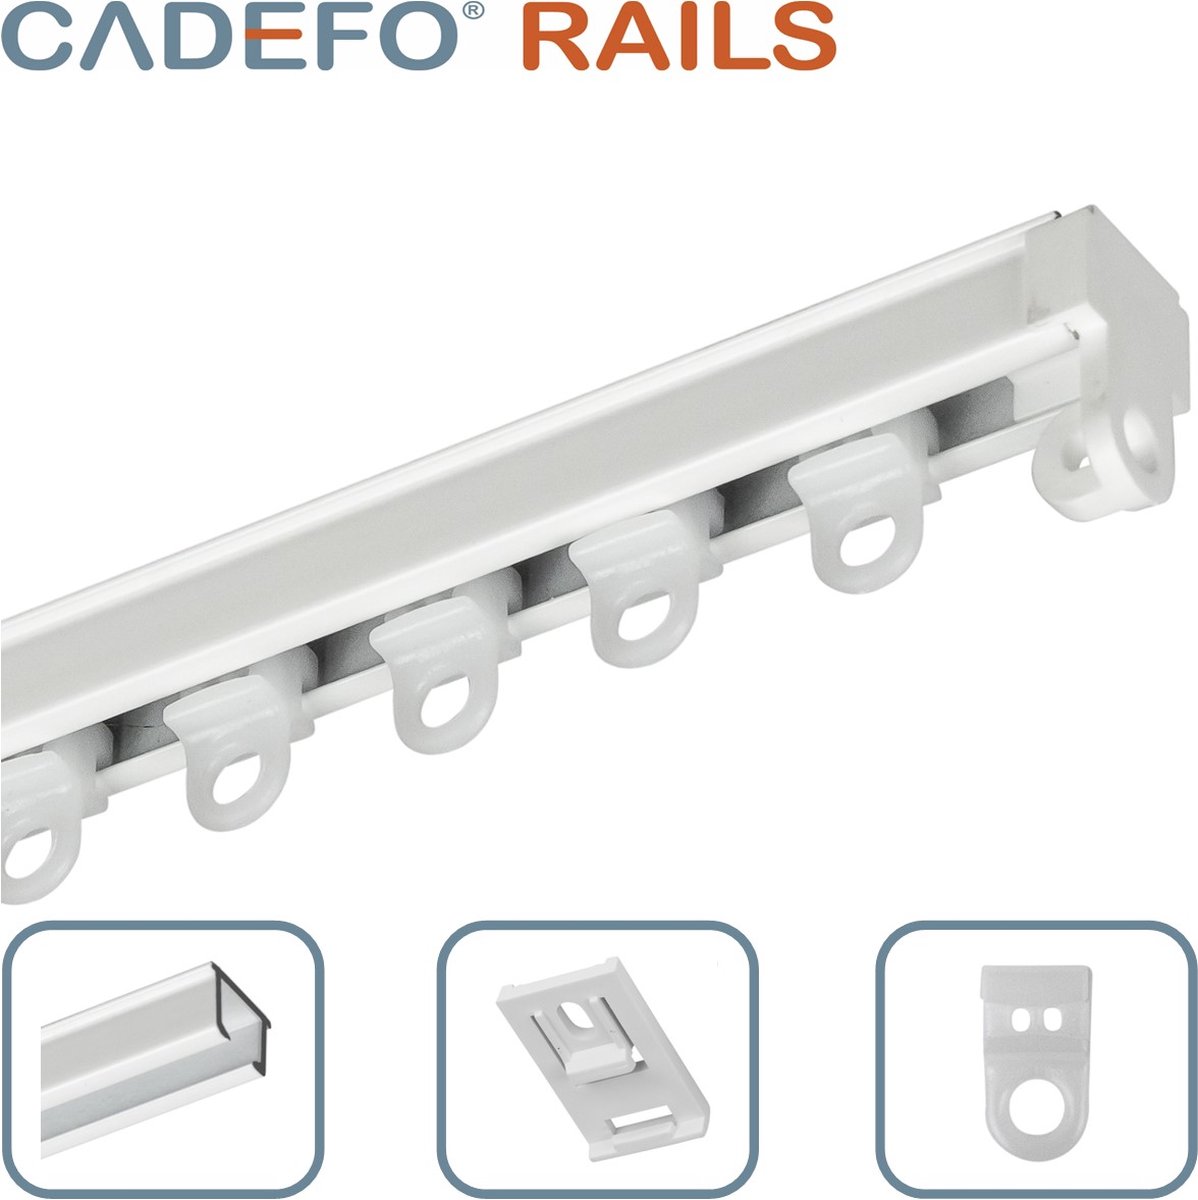 CADEFO RAILS (201 - 250 cm) Gordijnrails - Compleet op maat! - UIT 1 STUK - Leverbaar tot 6 meter - Plafondbevestiging - Lengte 212 cm